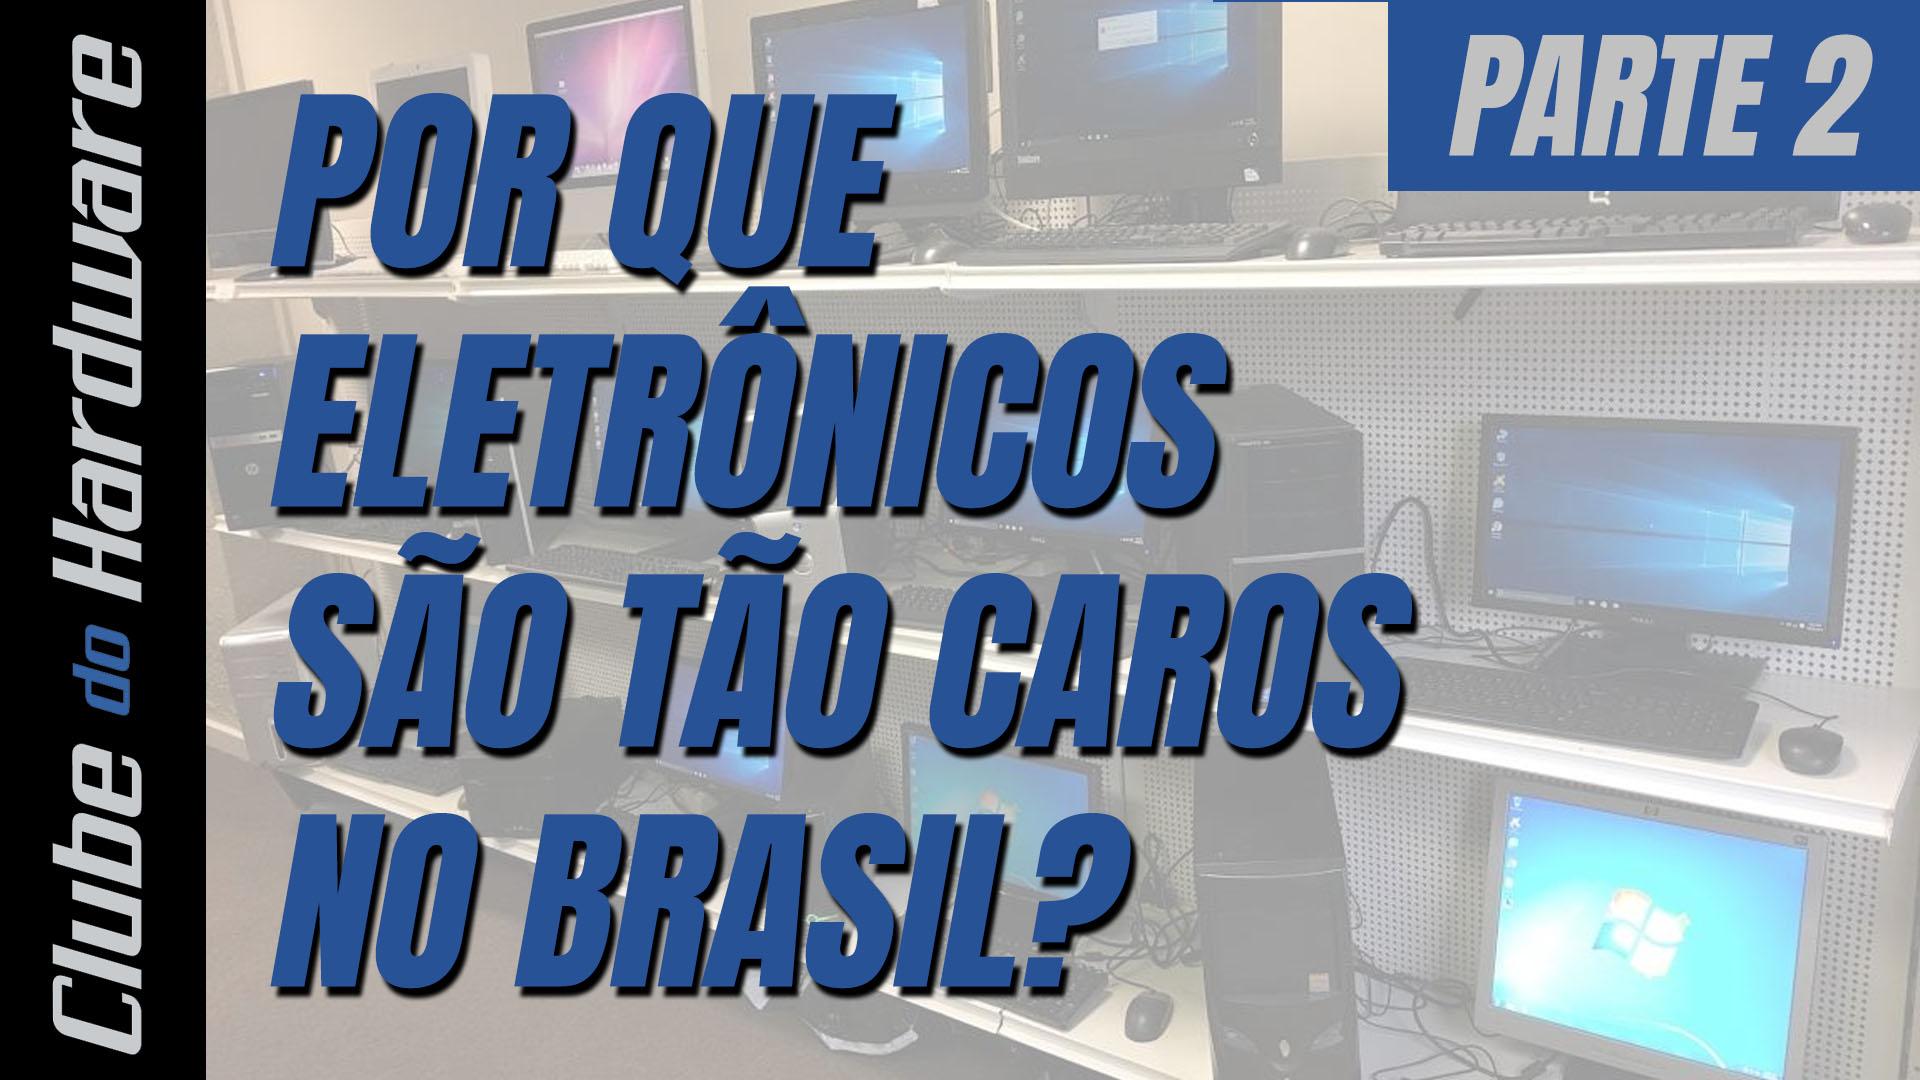 Por que eletrônicos são tão caros no Brasil? - parte 2